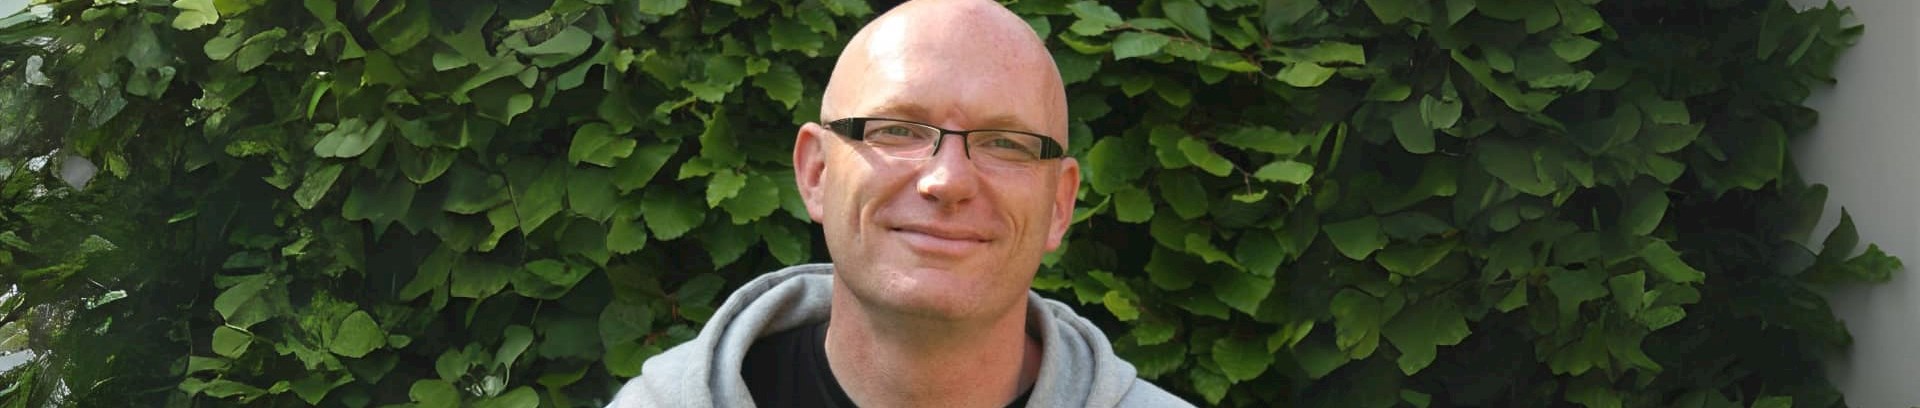 Søren Østergaard, forsker, forfatter, foredragsholder i FOF Aarhus